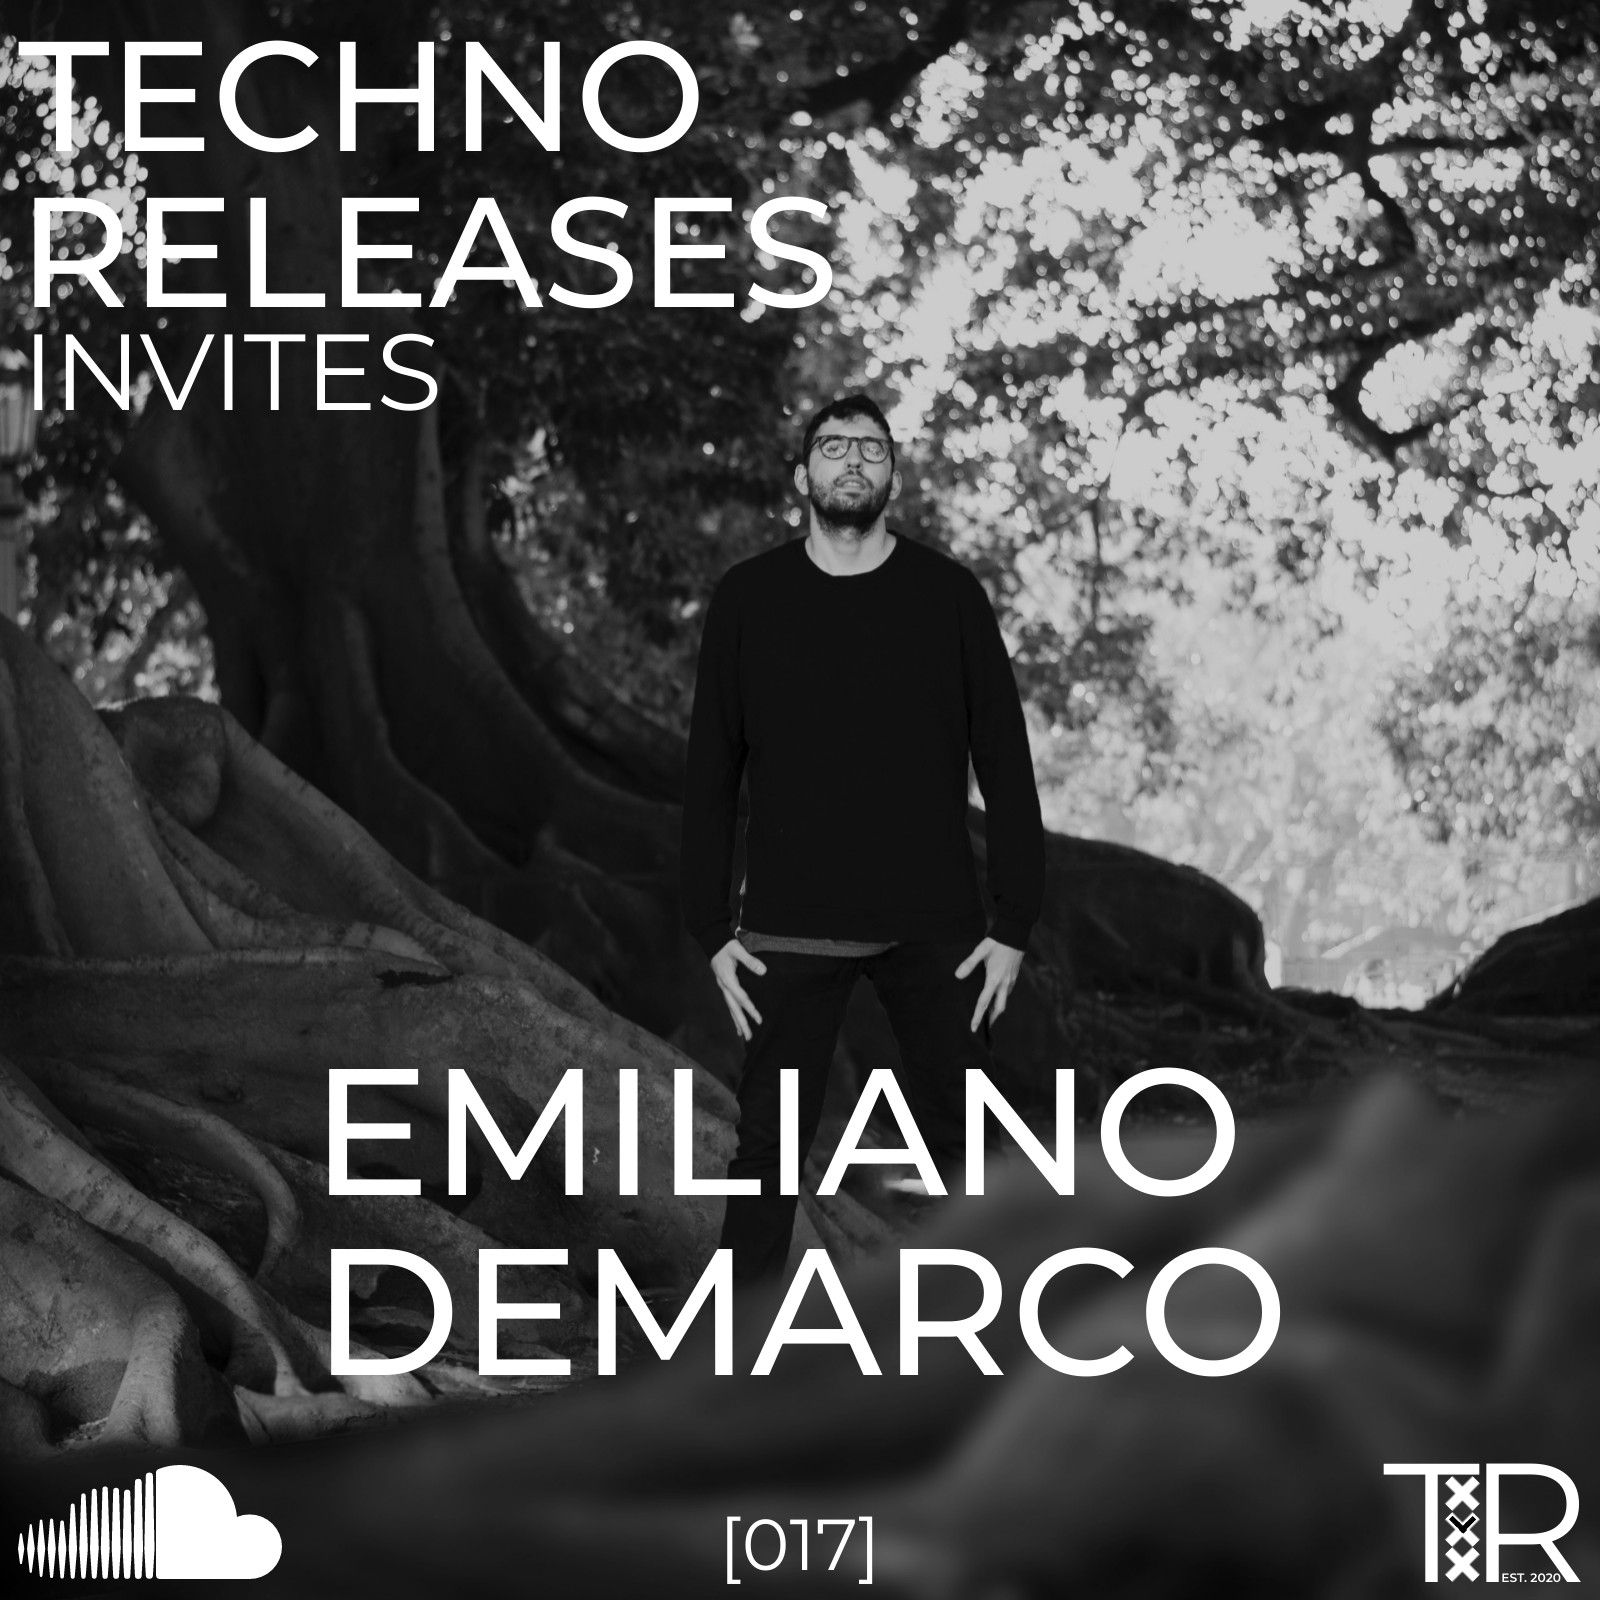 ڊائون لو Techno Releases Invites Emiliano Demarco - [017]